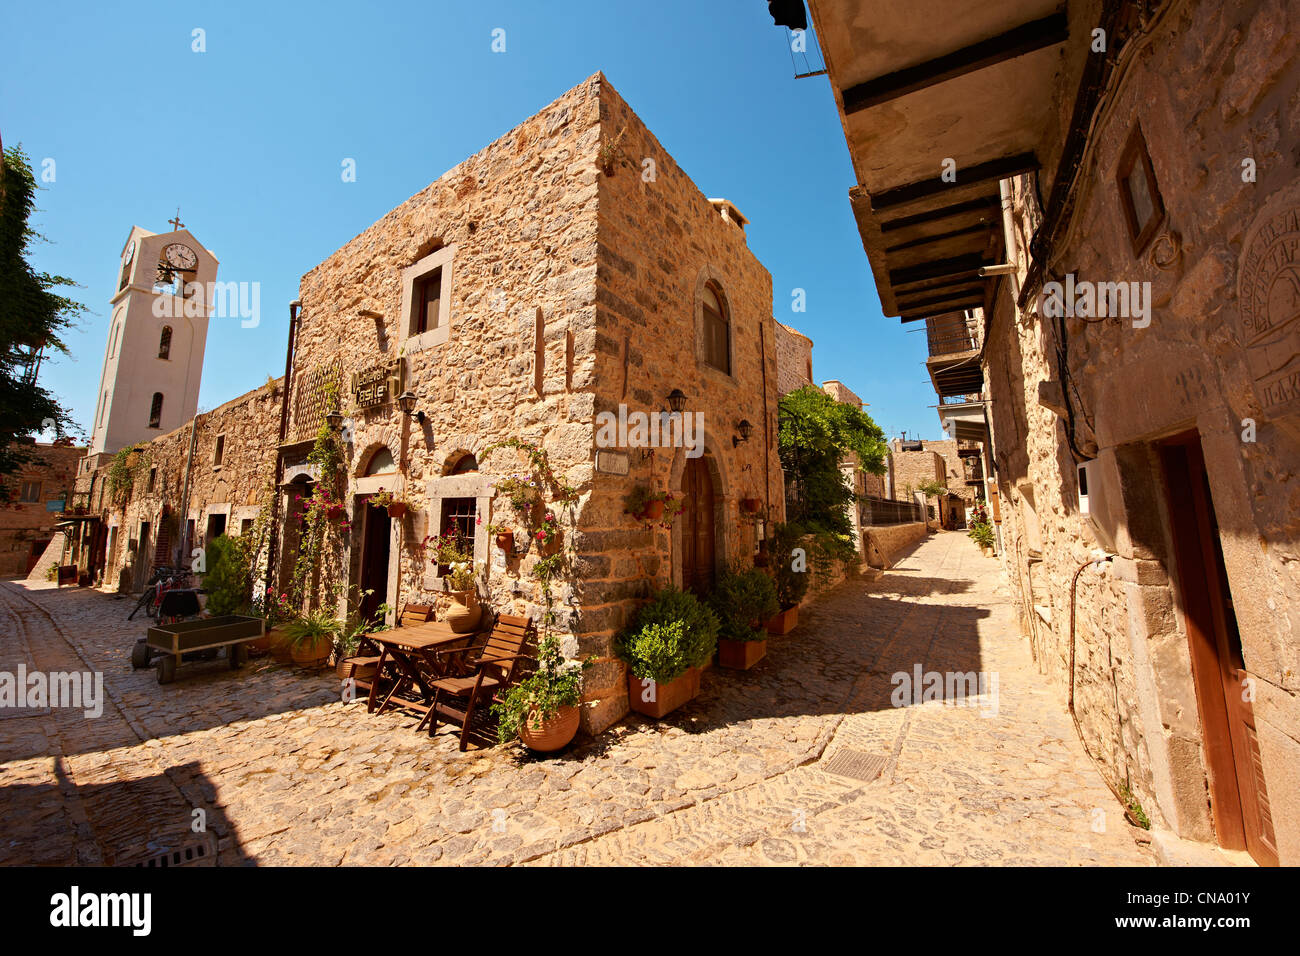 Les rues médiévales de mastic génois village fortifié de Mesta, Mastichochoria domaine de l'île de Chios, Grèce. Banque D'Images